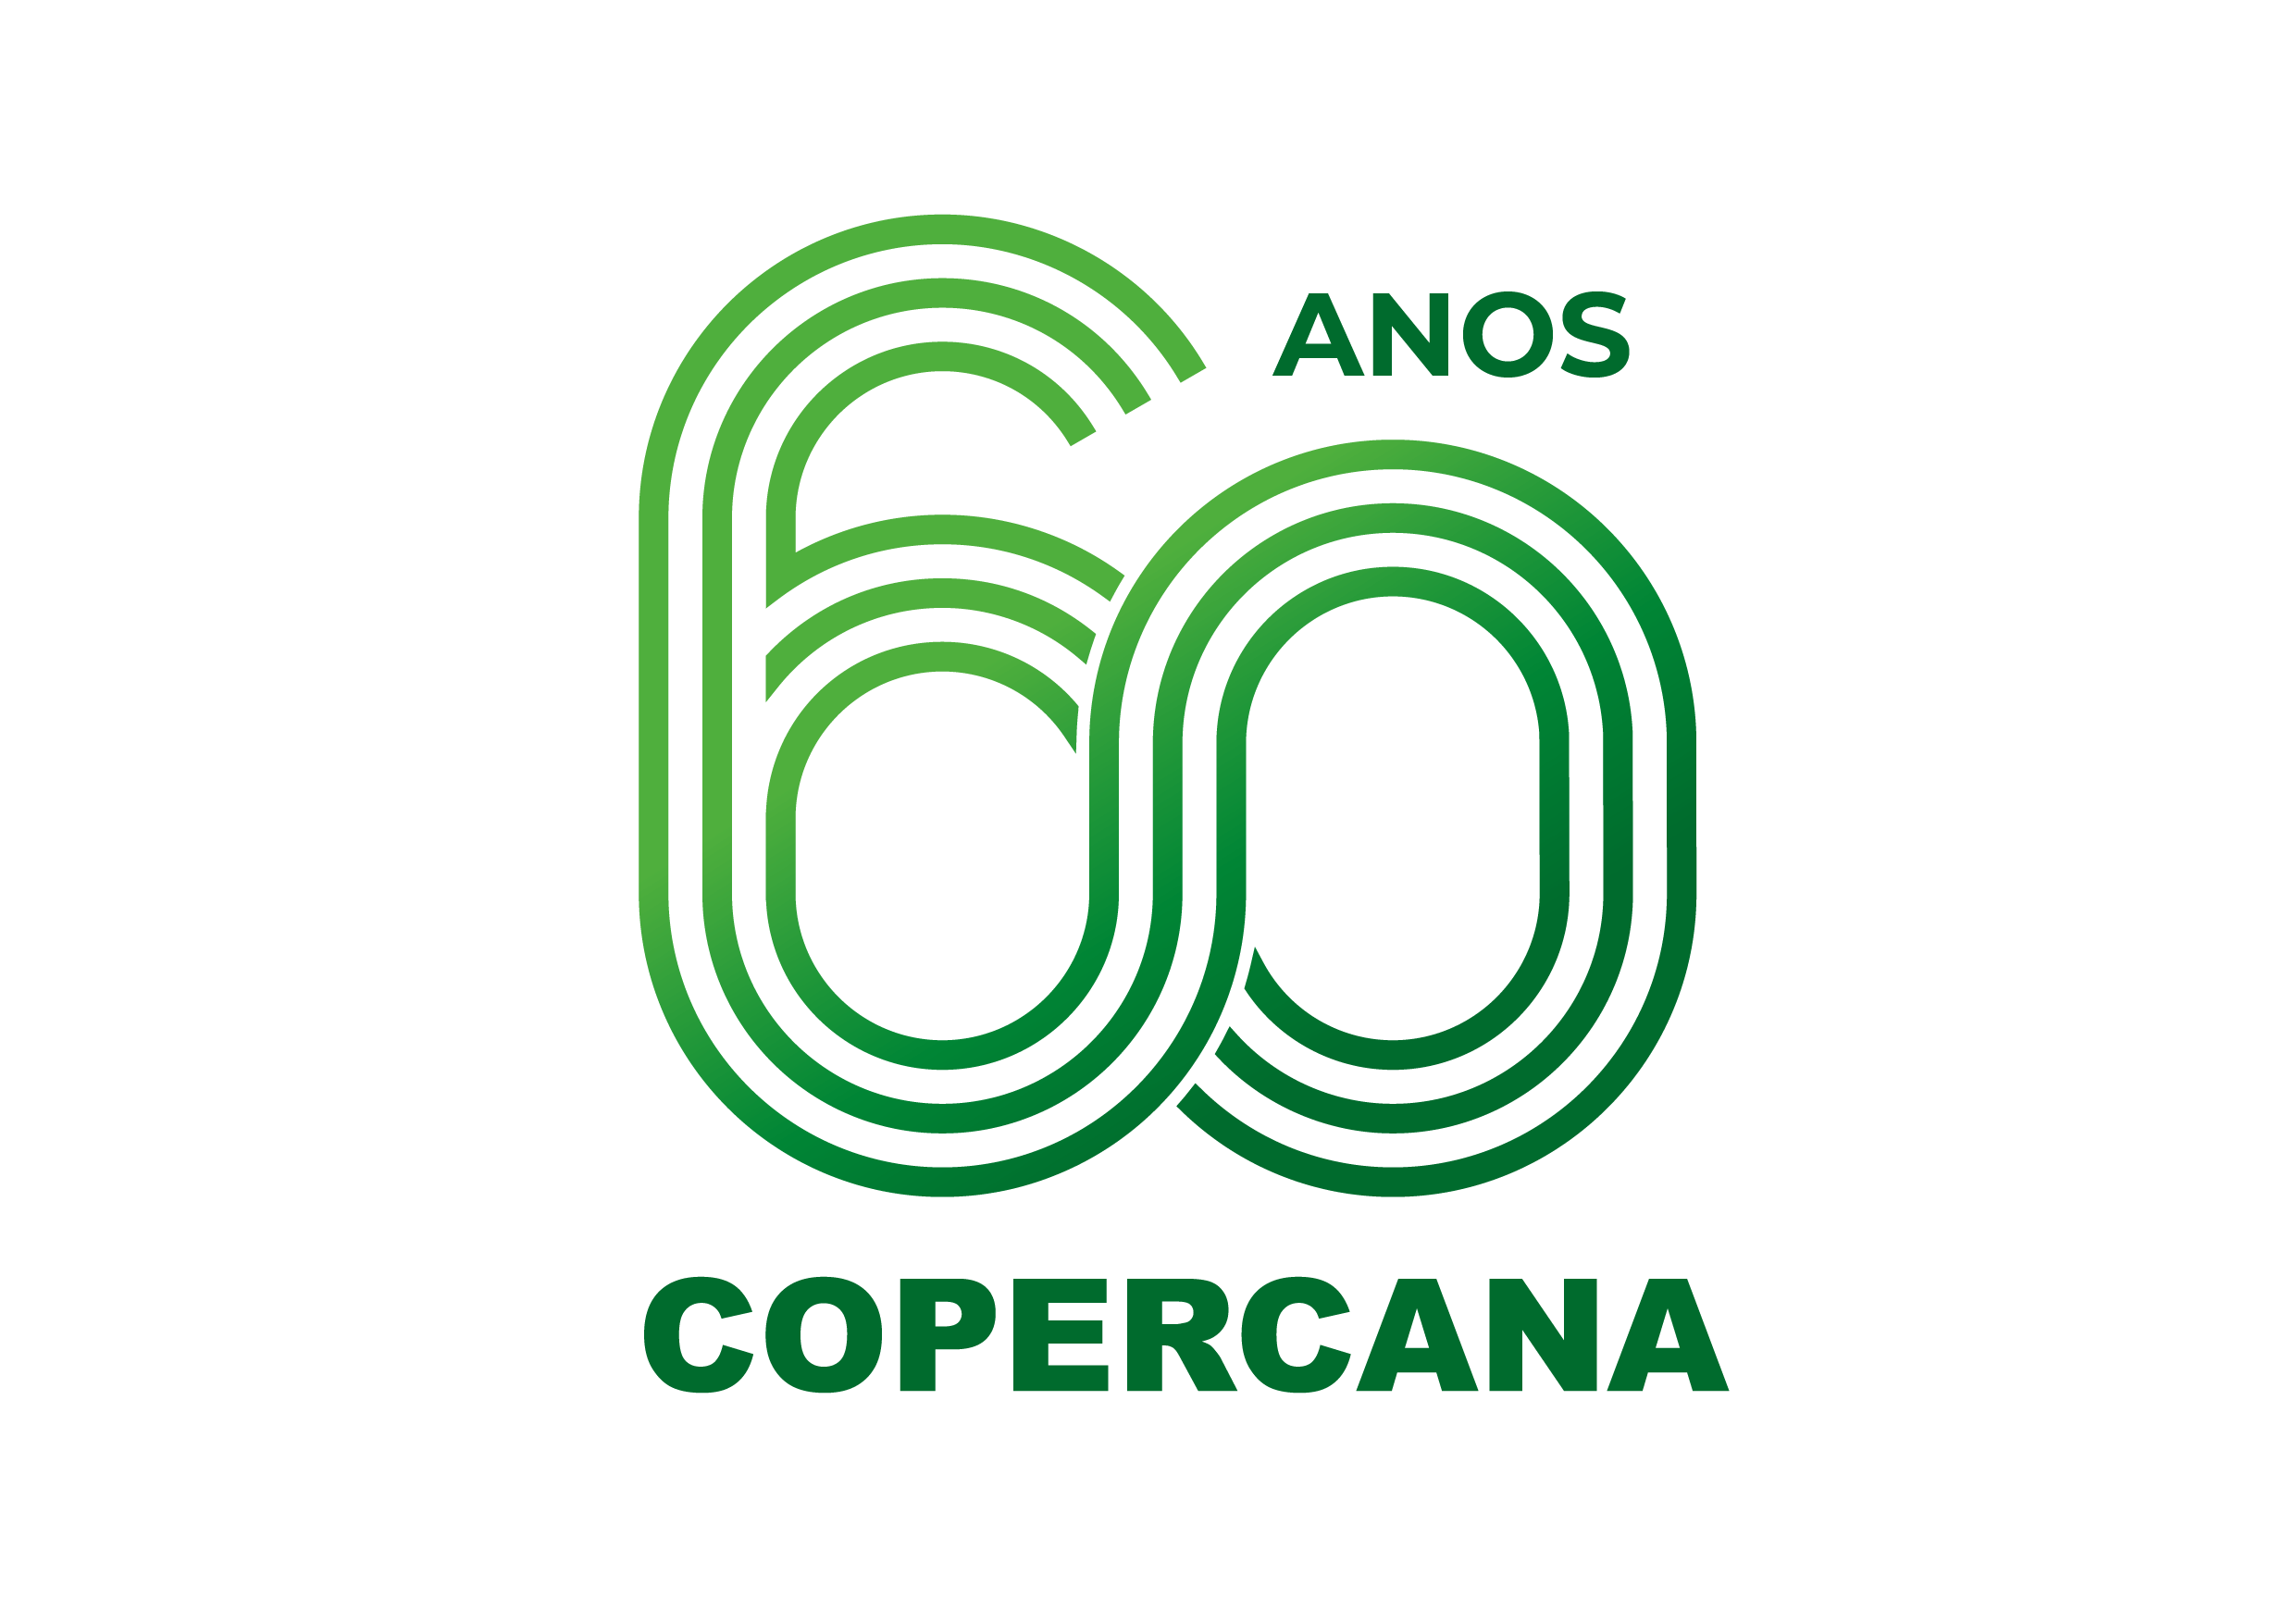 Agronegócio Copercana - logo oficial